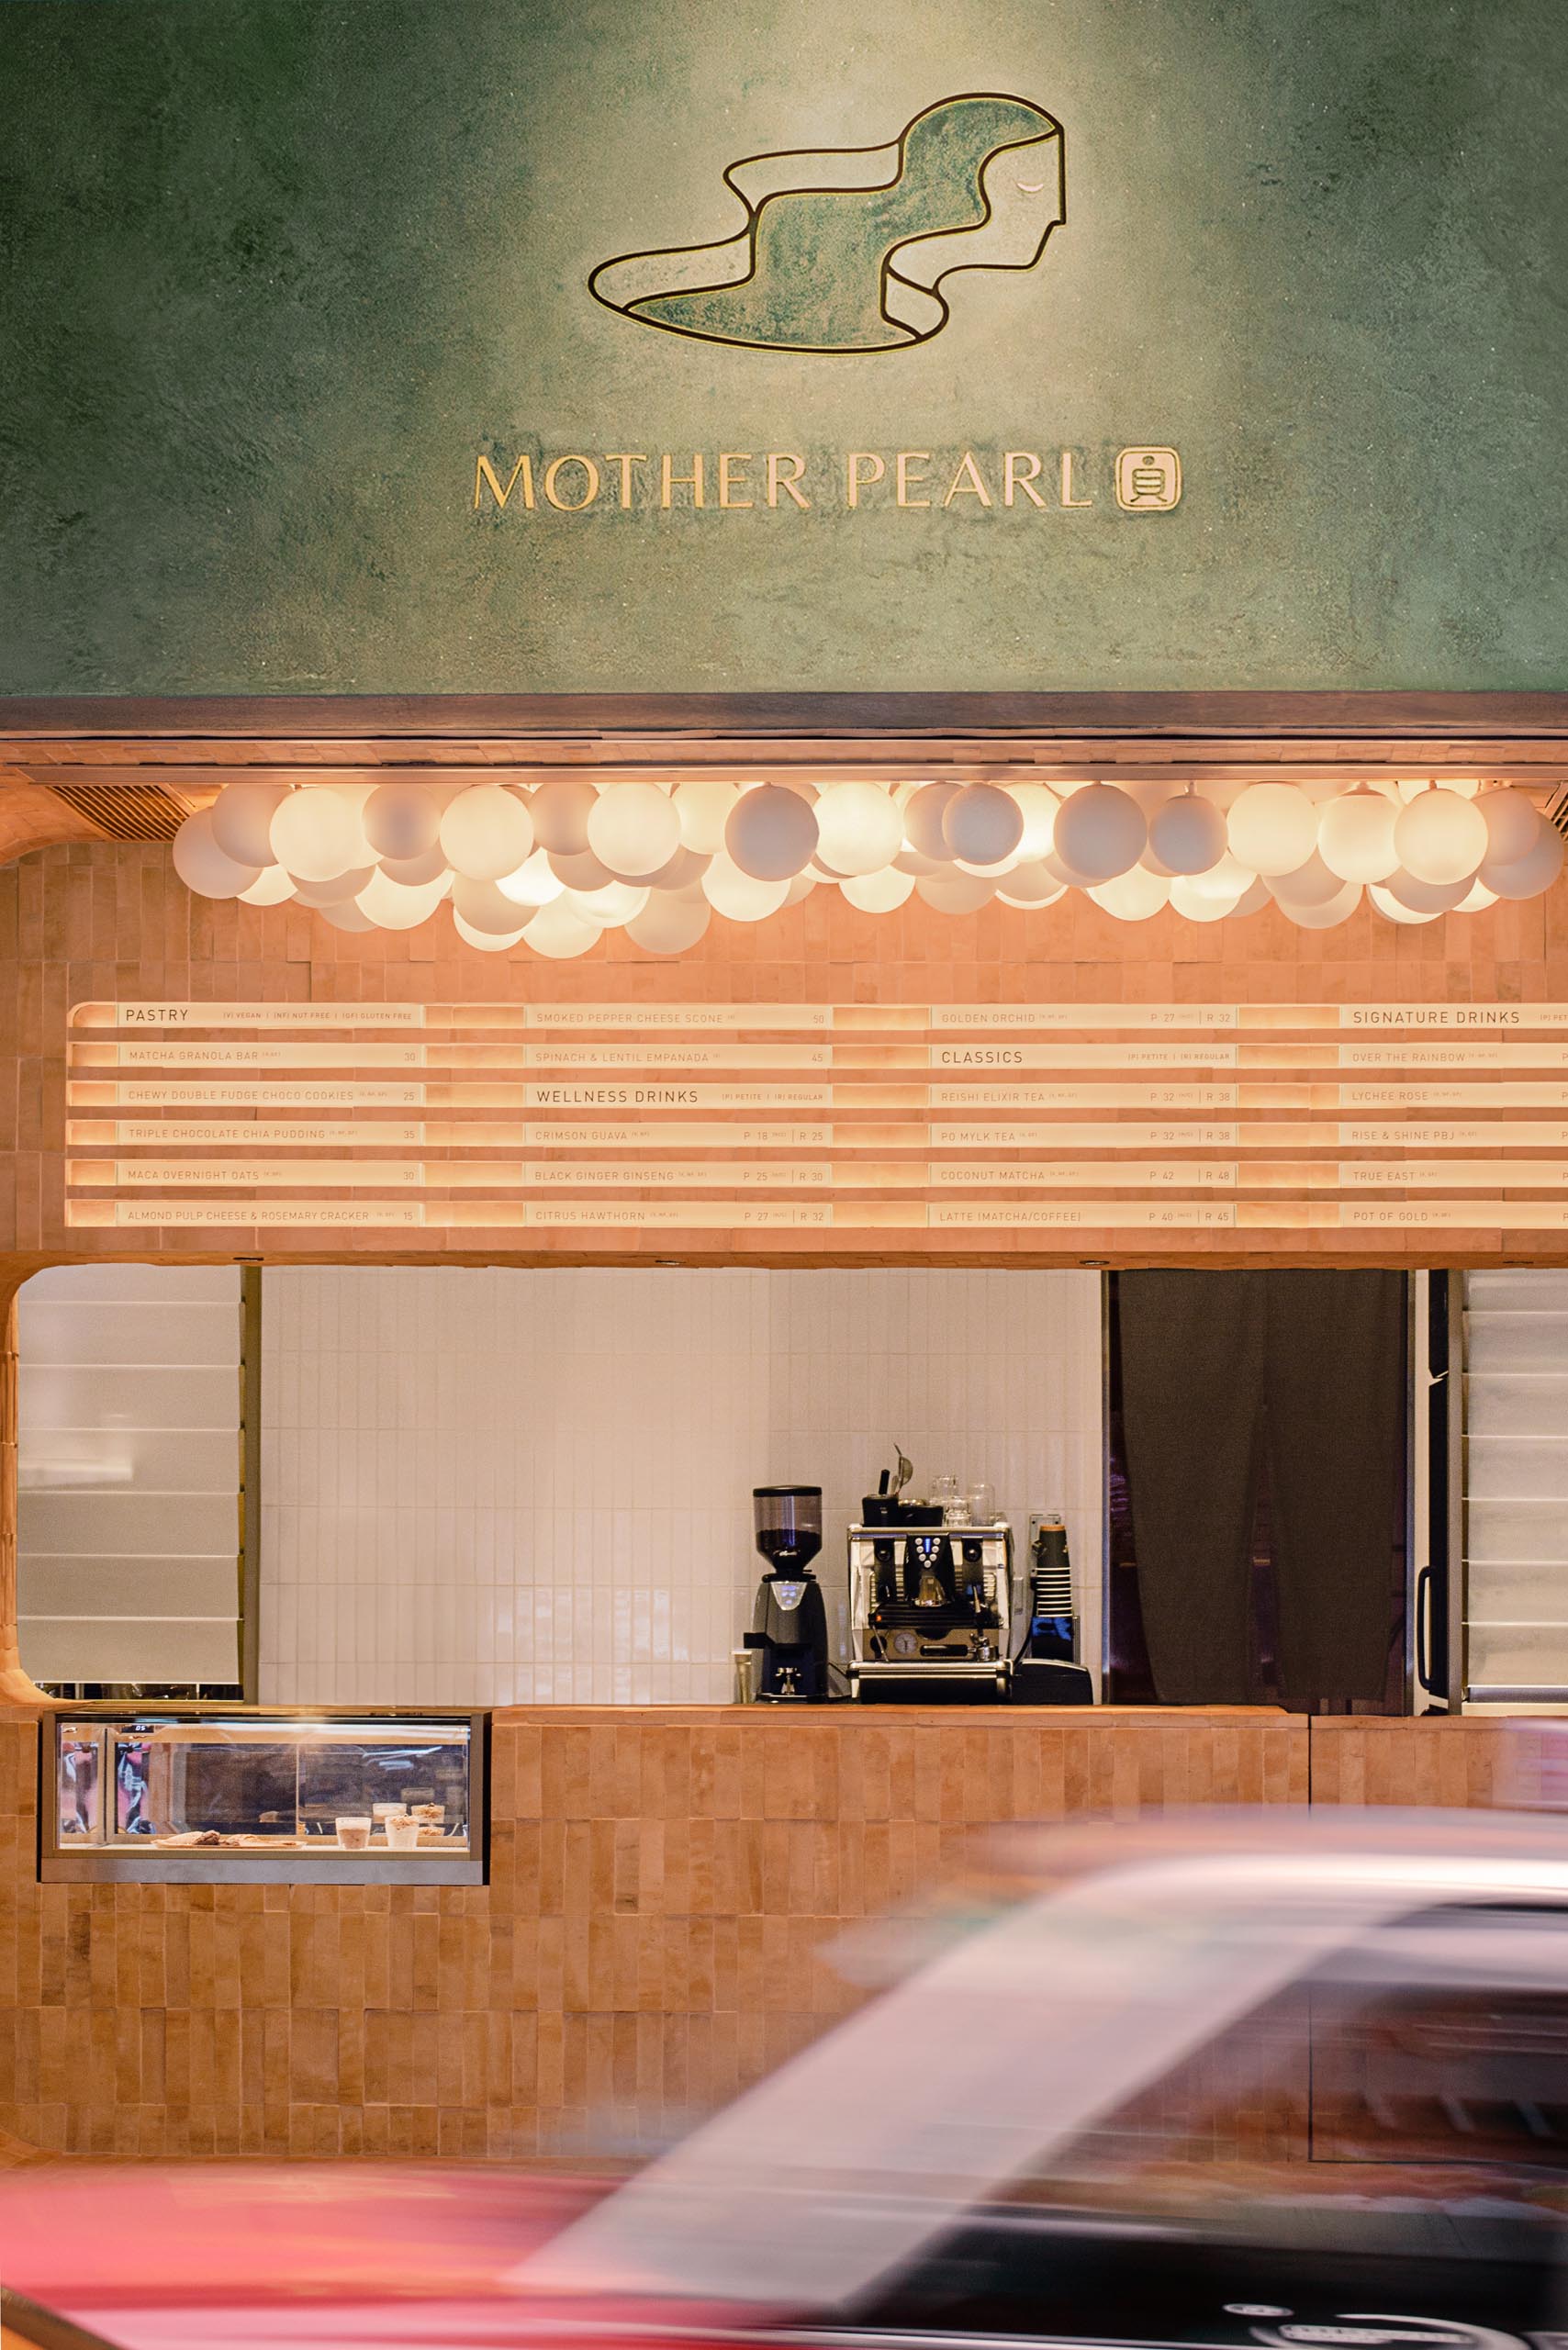 Темно-оливково-зеленый экстерьер этого чайного домика выделяется на фоне других магазинов в этом районе, а на фасаде выделен логотип.